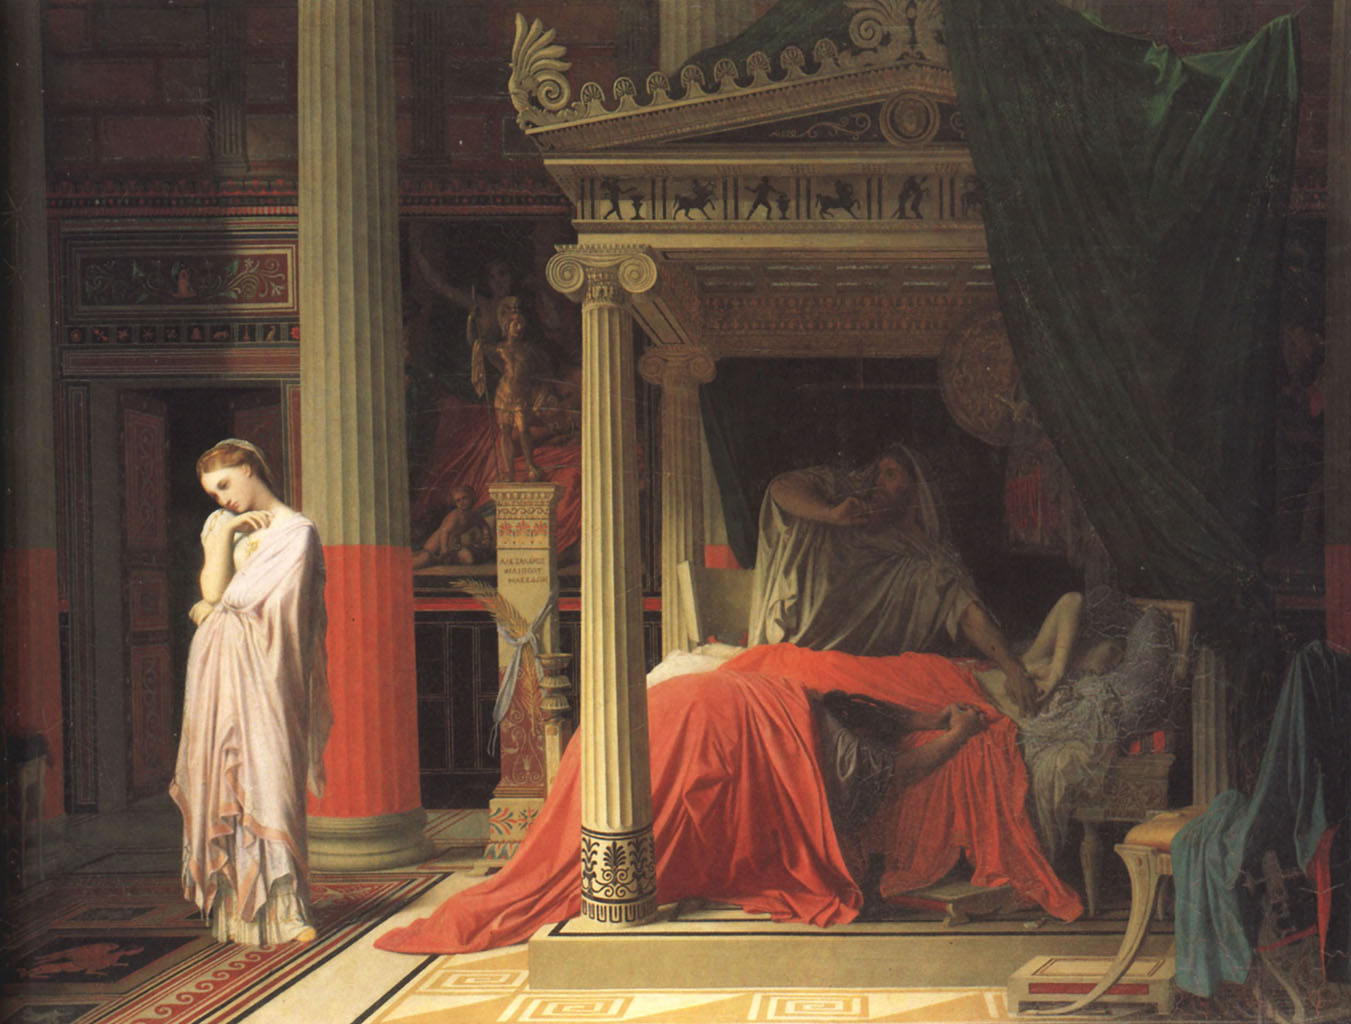 Жан Огюст Доминик Энгр (Jean Auguste Dominique Ingres), “Antiochus and Stratonice“